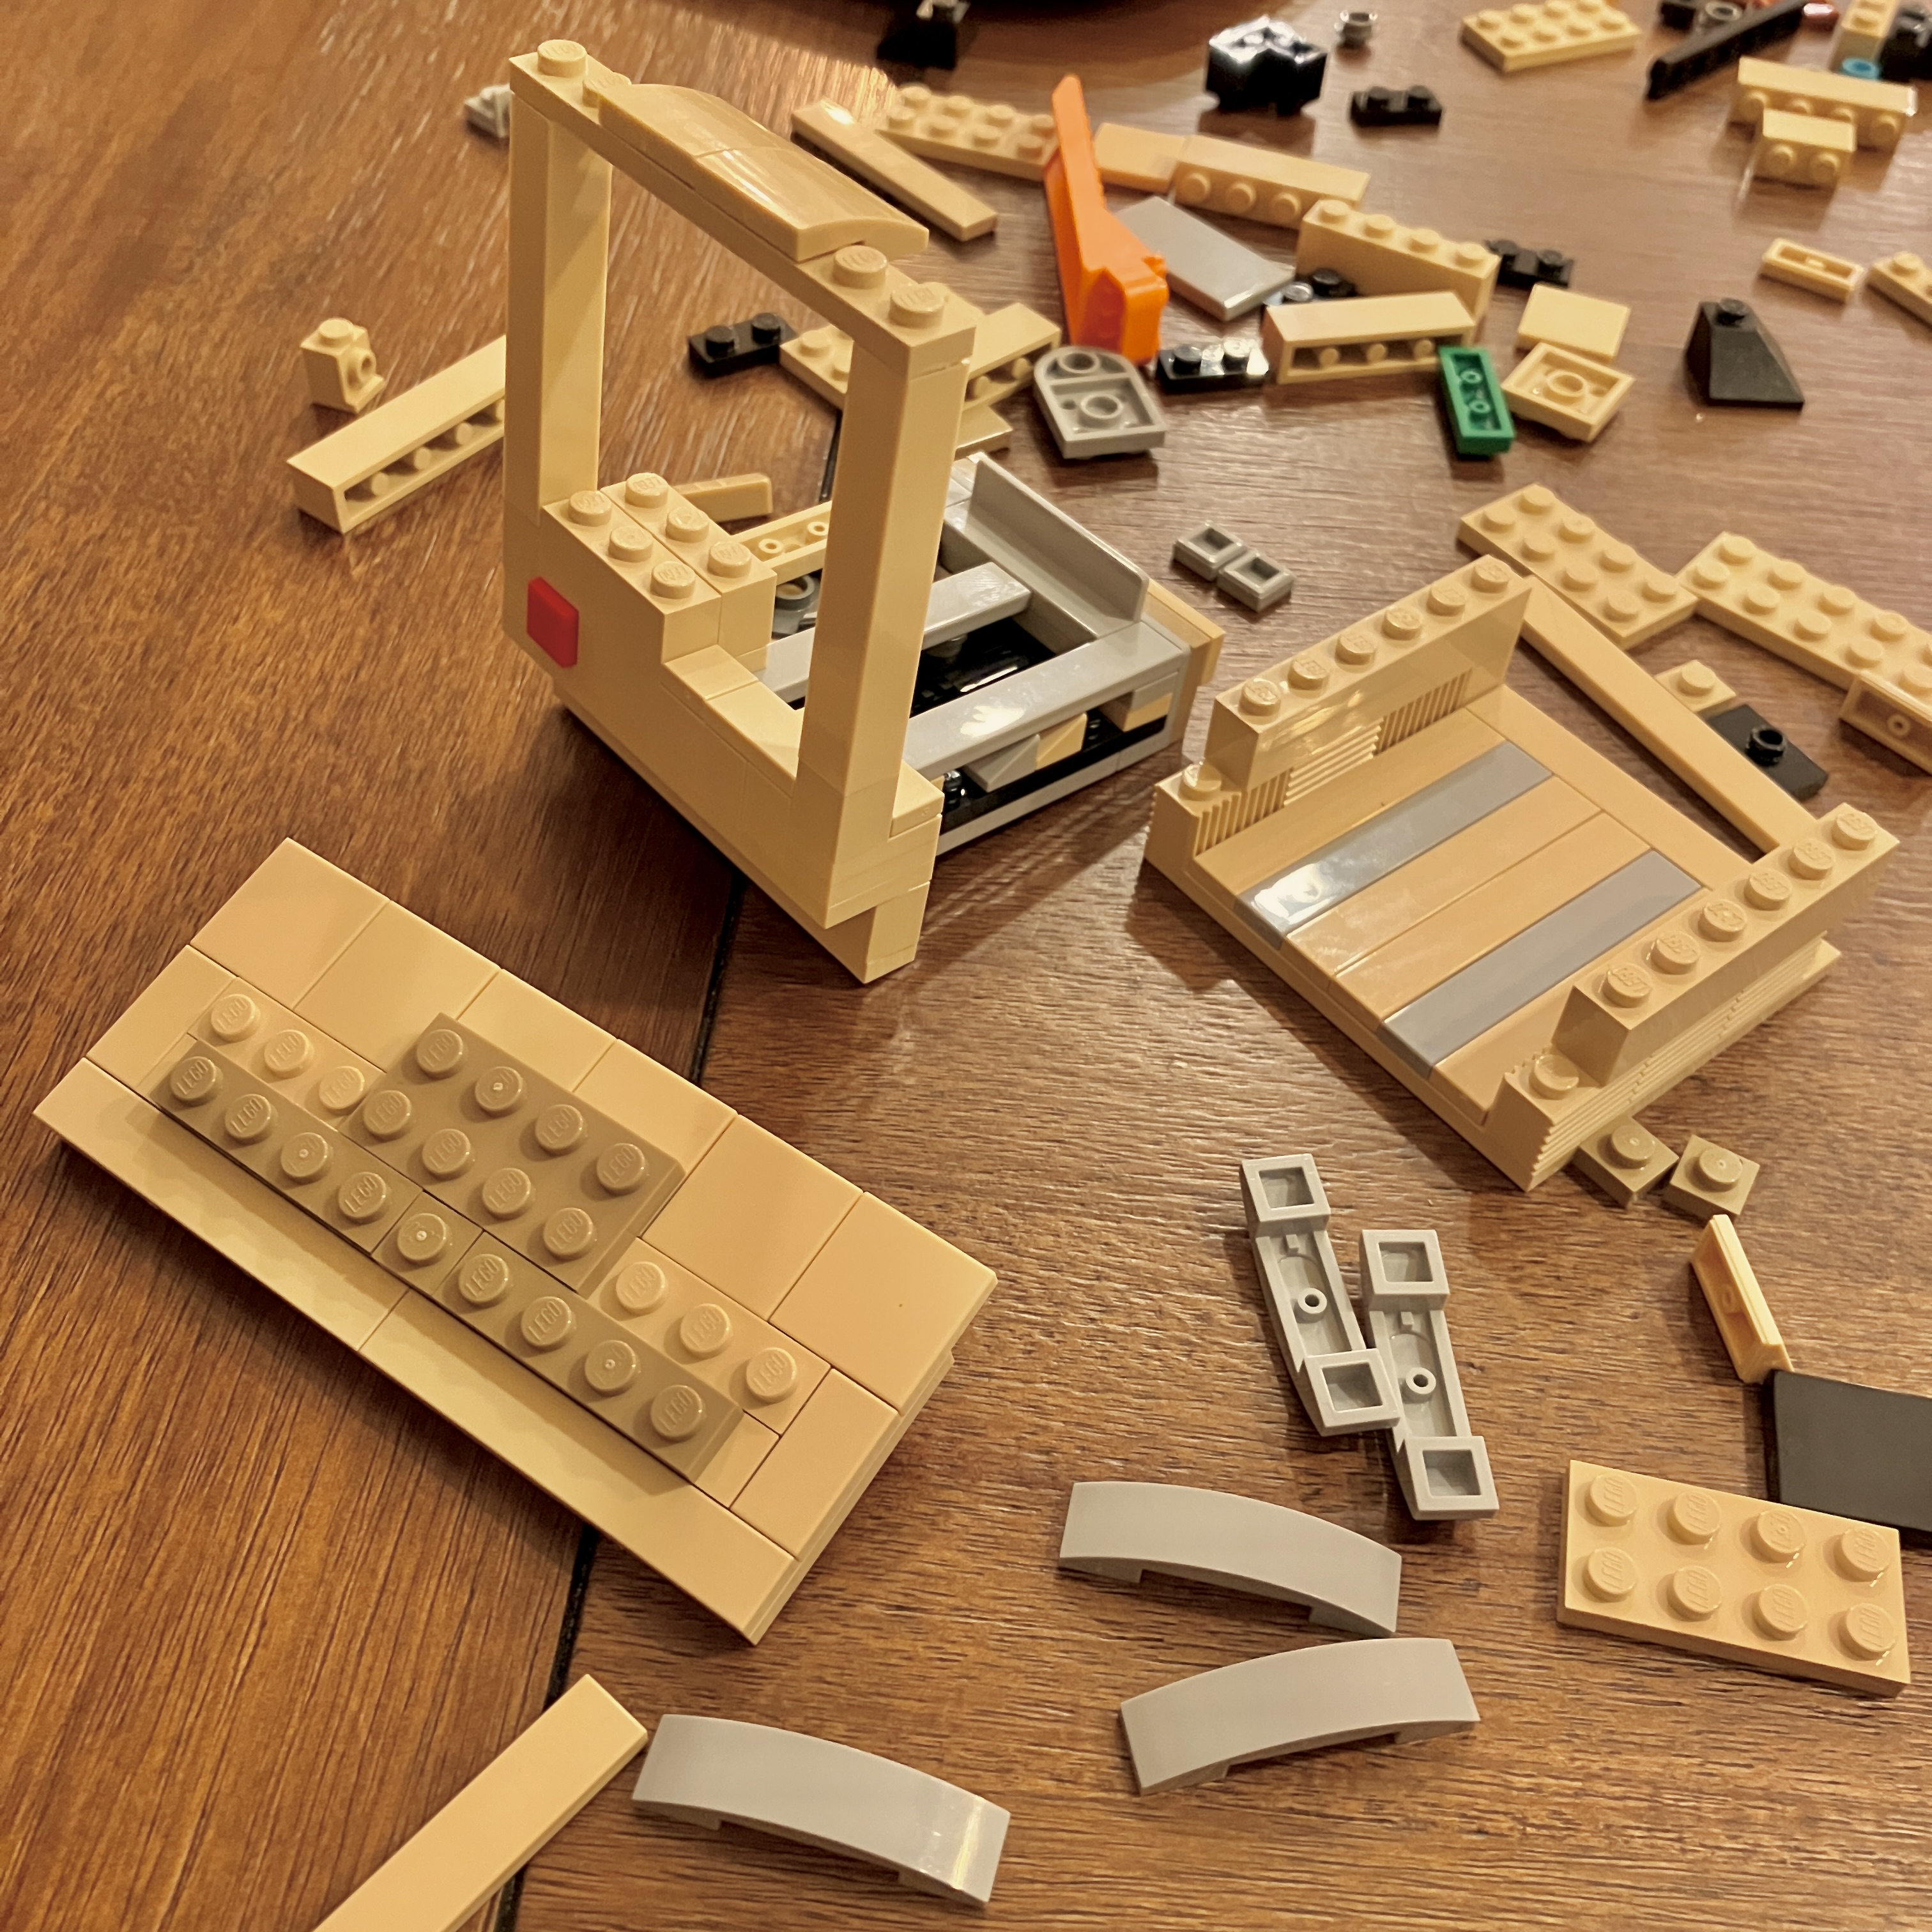 Assembling the Lego Mac